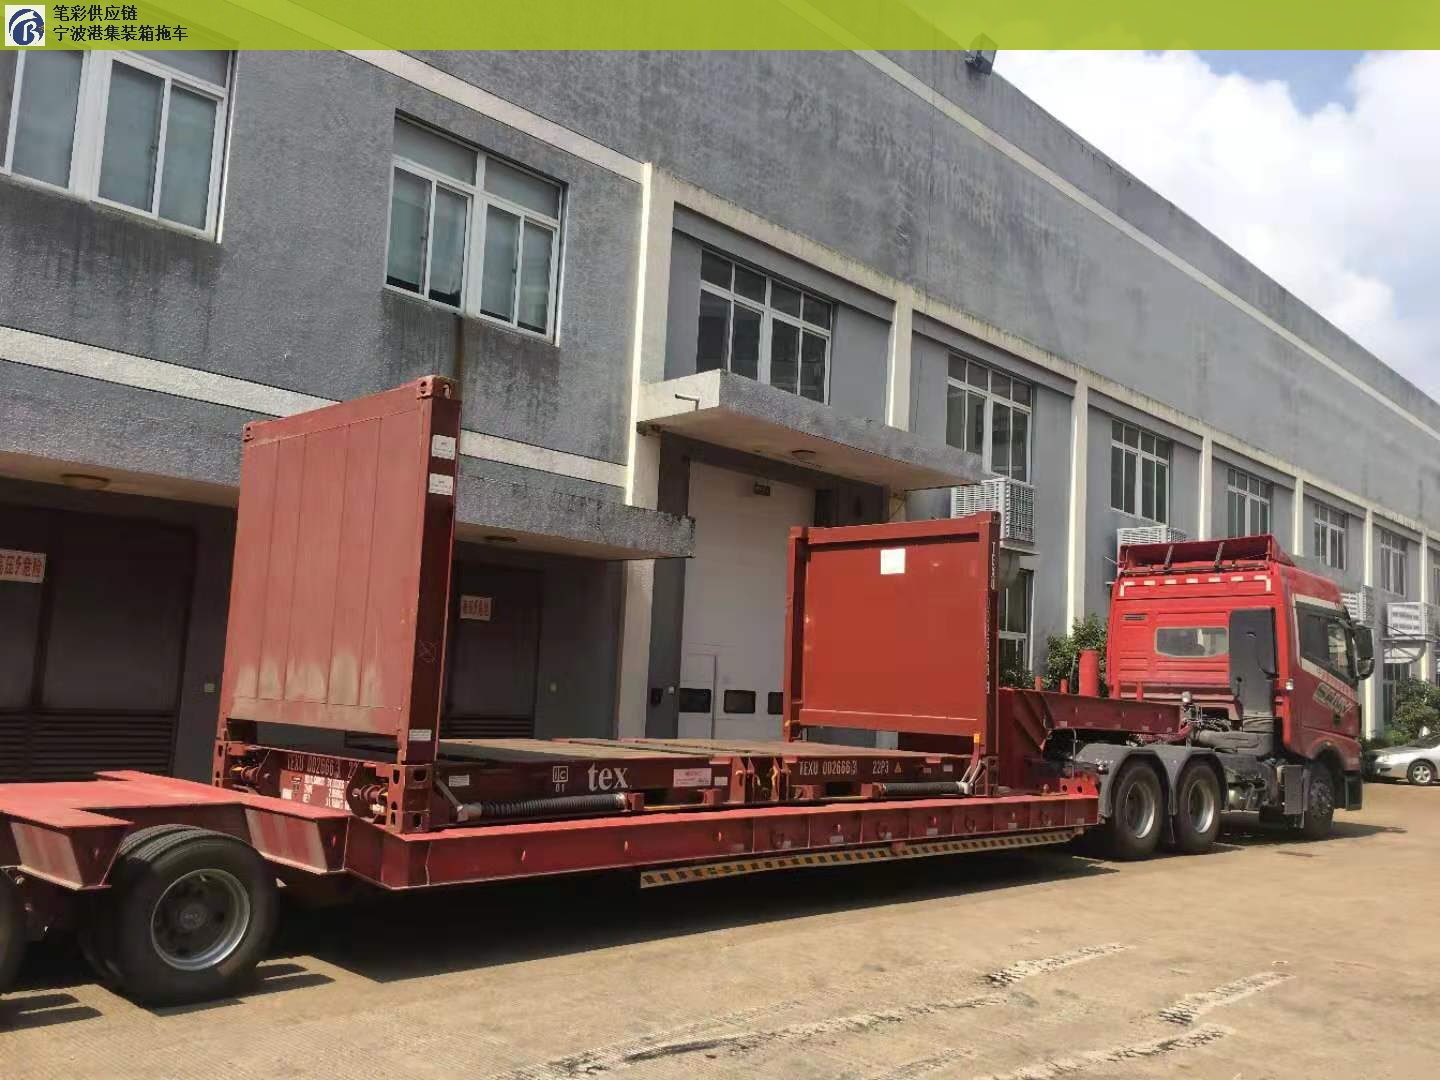 温州出口集装箱拖车车队,集装箱拖车